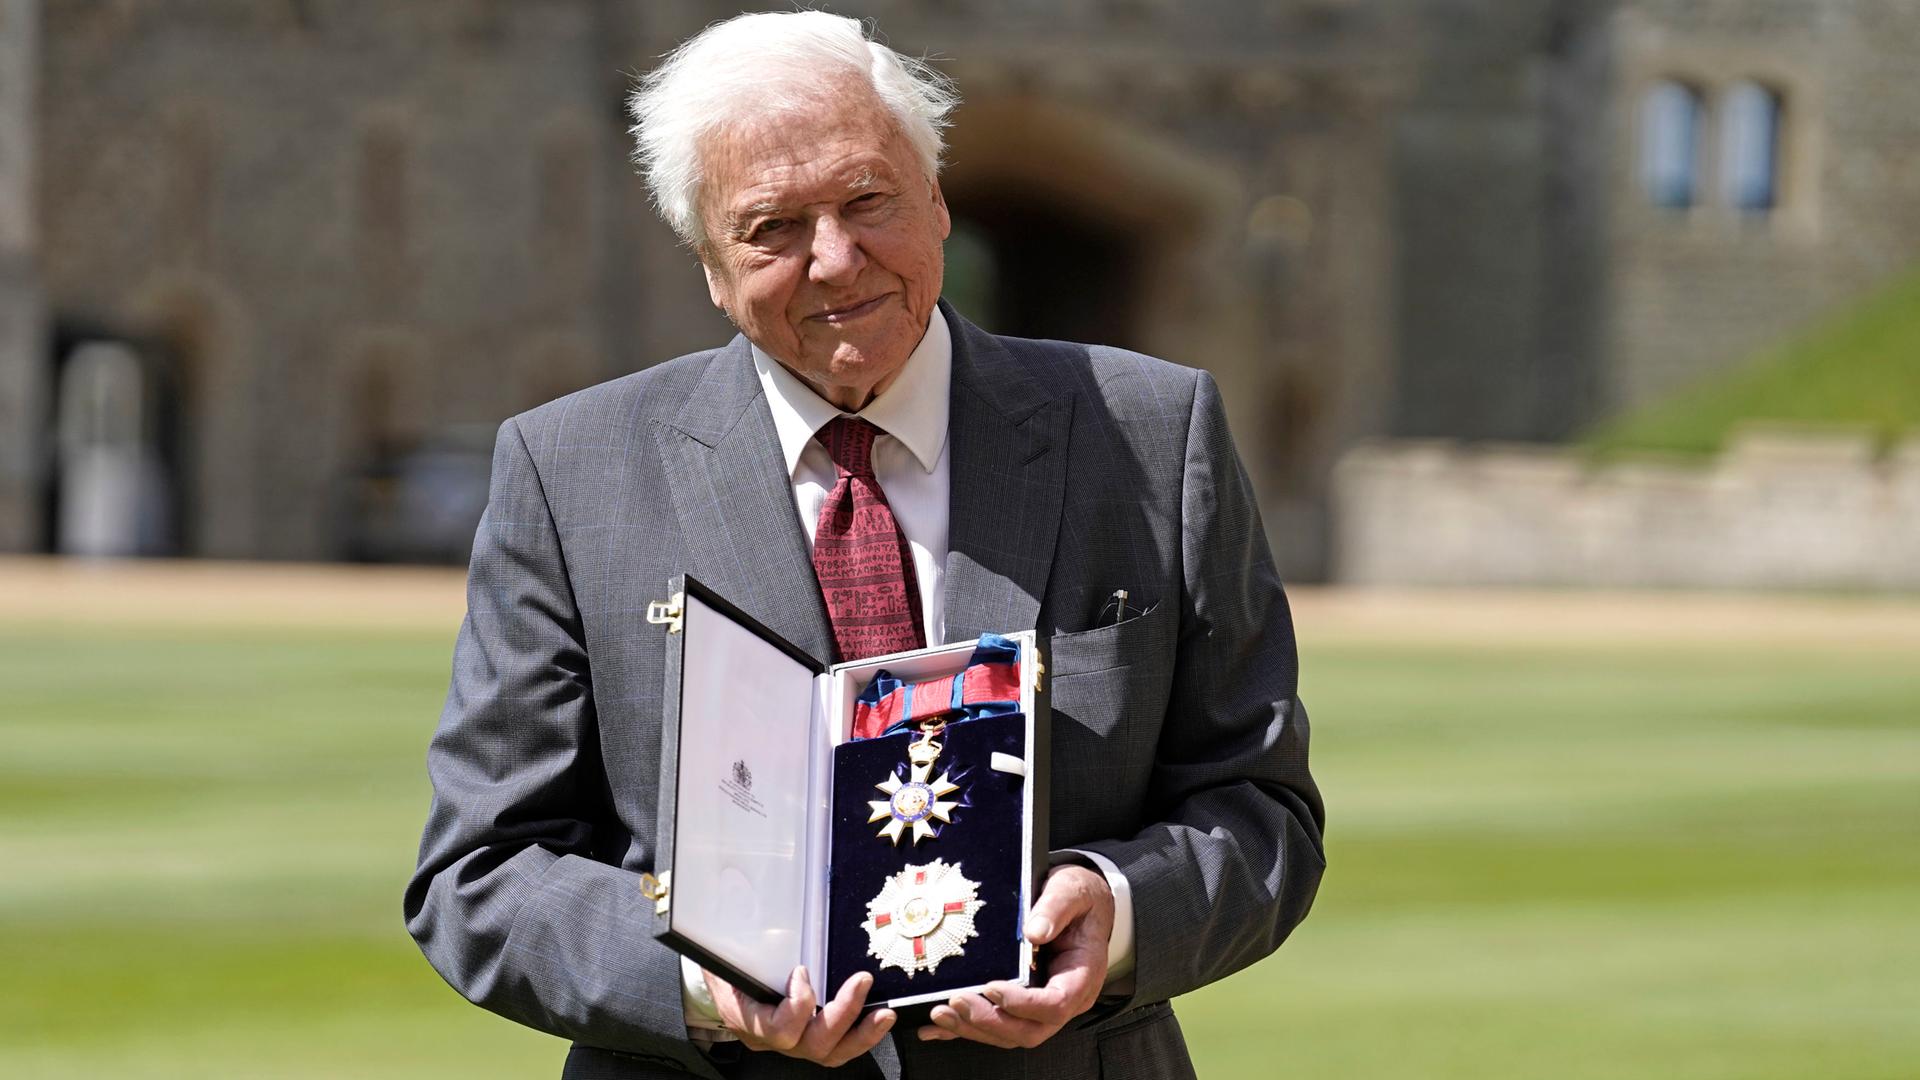 Sir David Attenborough, Tierfilmer, Naturforscher und Schriftsteller aus Großbritannien, präsentiert seine Orden nach seiner Ernennung zum Ritter des Großkreuzes des St. Michael und St. Georgs Ordens nach einer Einführungszeremonie auf Schloss Windsor.